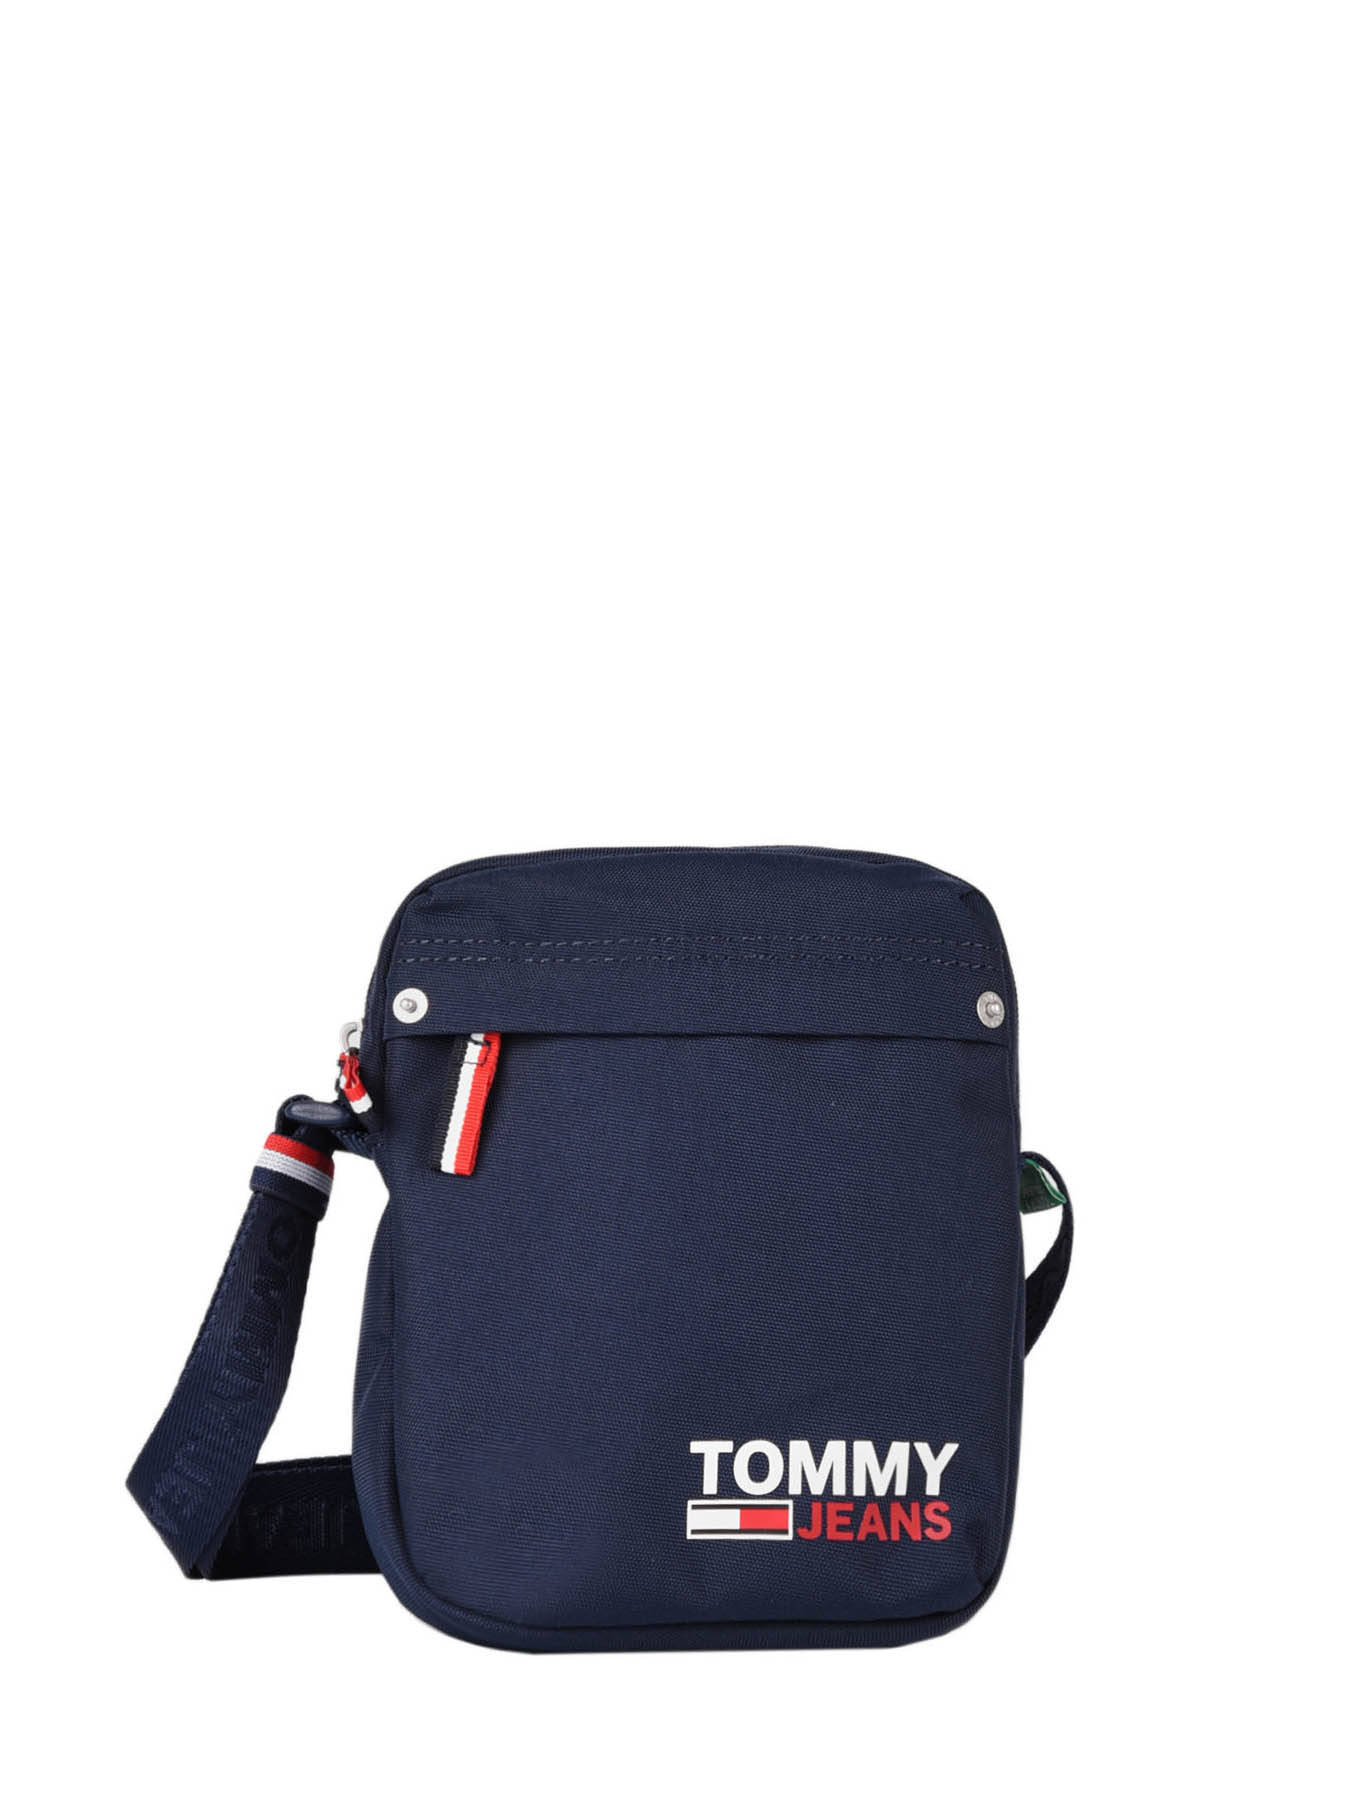 tommy jeans shoulder bag